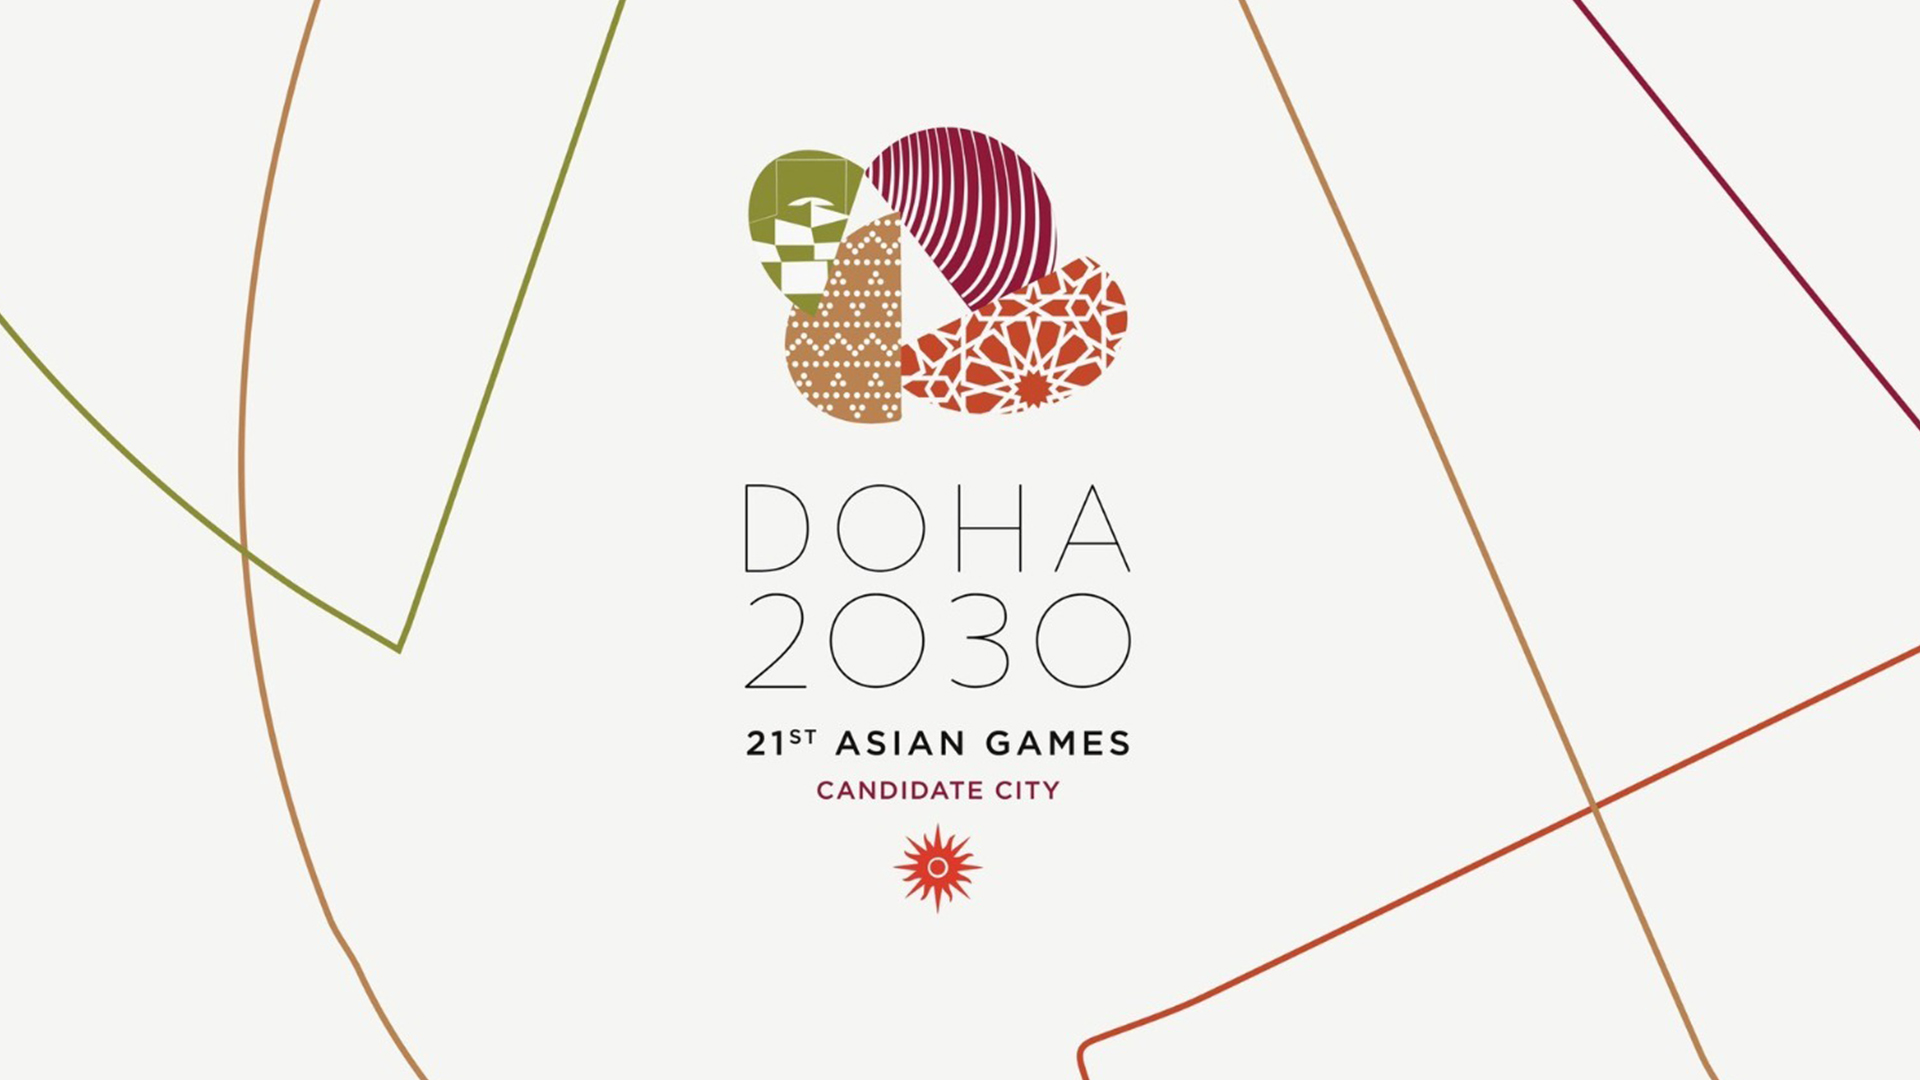 Qatari team in Nepal to seek help in Asian Games